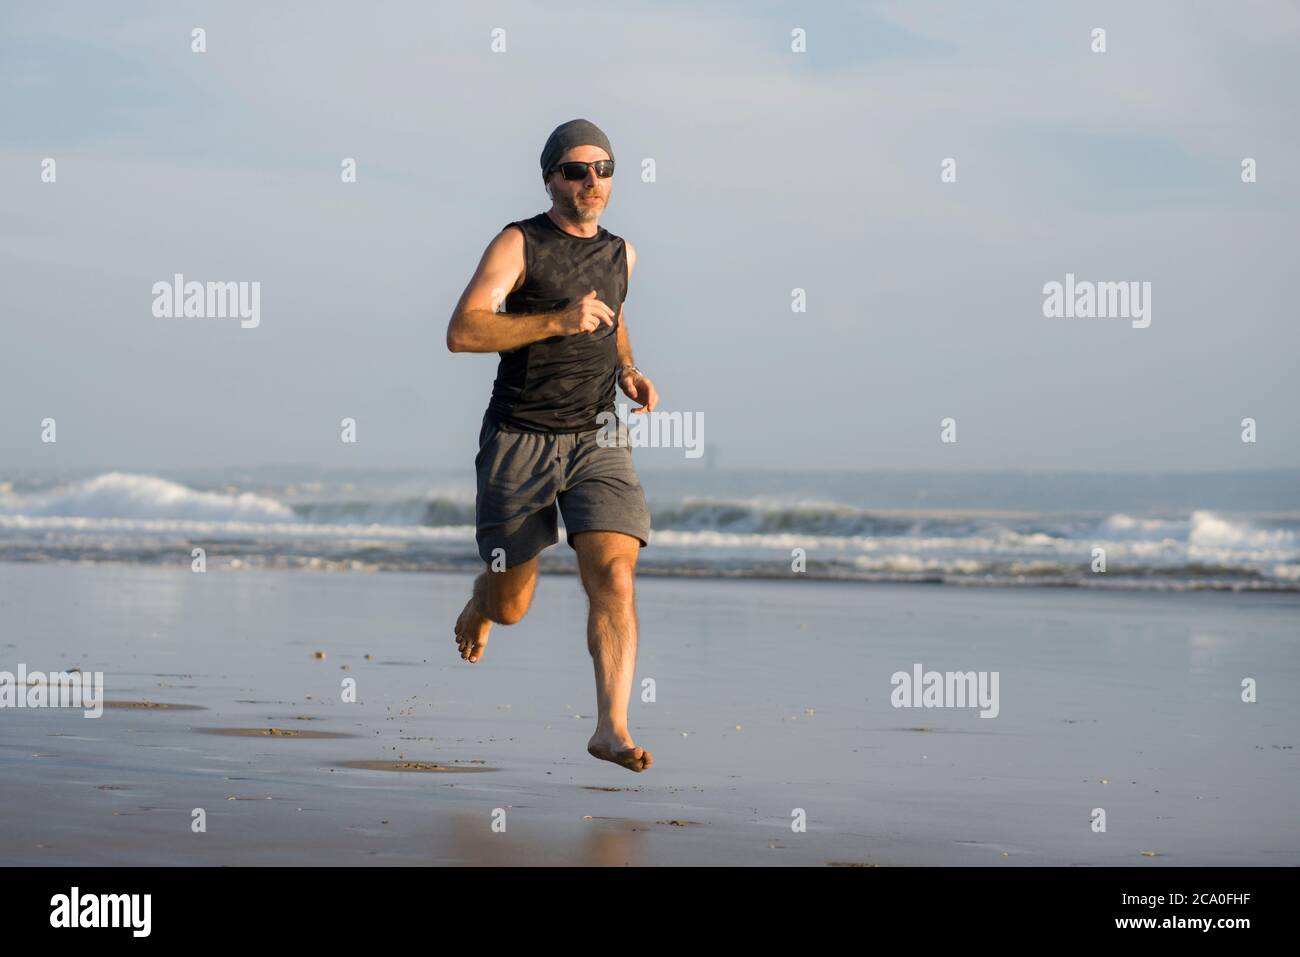 Entraînement de course à pied en plein air - jeune homme coureur attrayant et athlétique jogging sur la belle plage en été entraînement heureux et gratuit dans la forme physique et la santé Banque D'Images